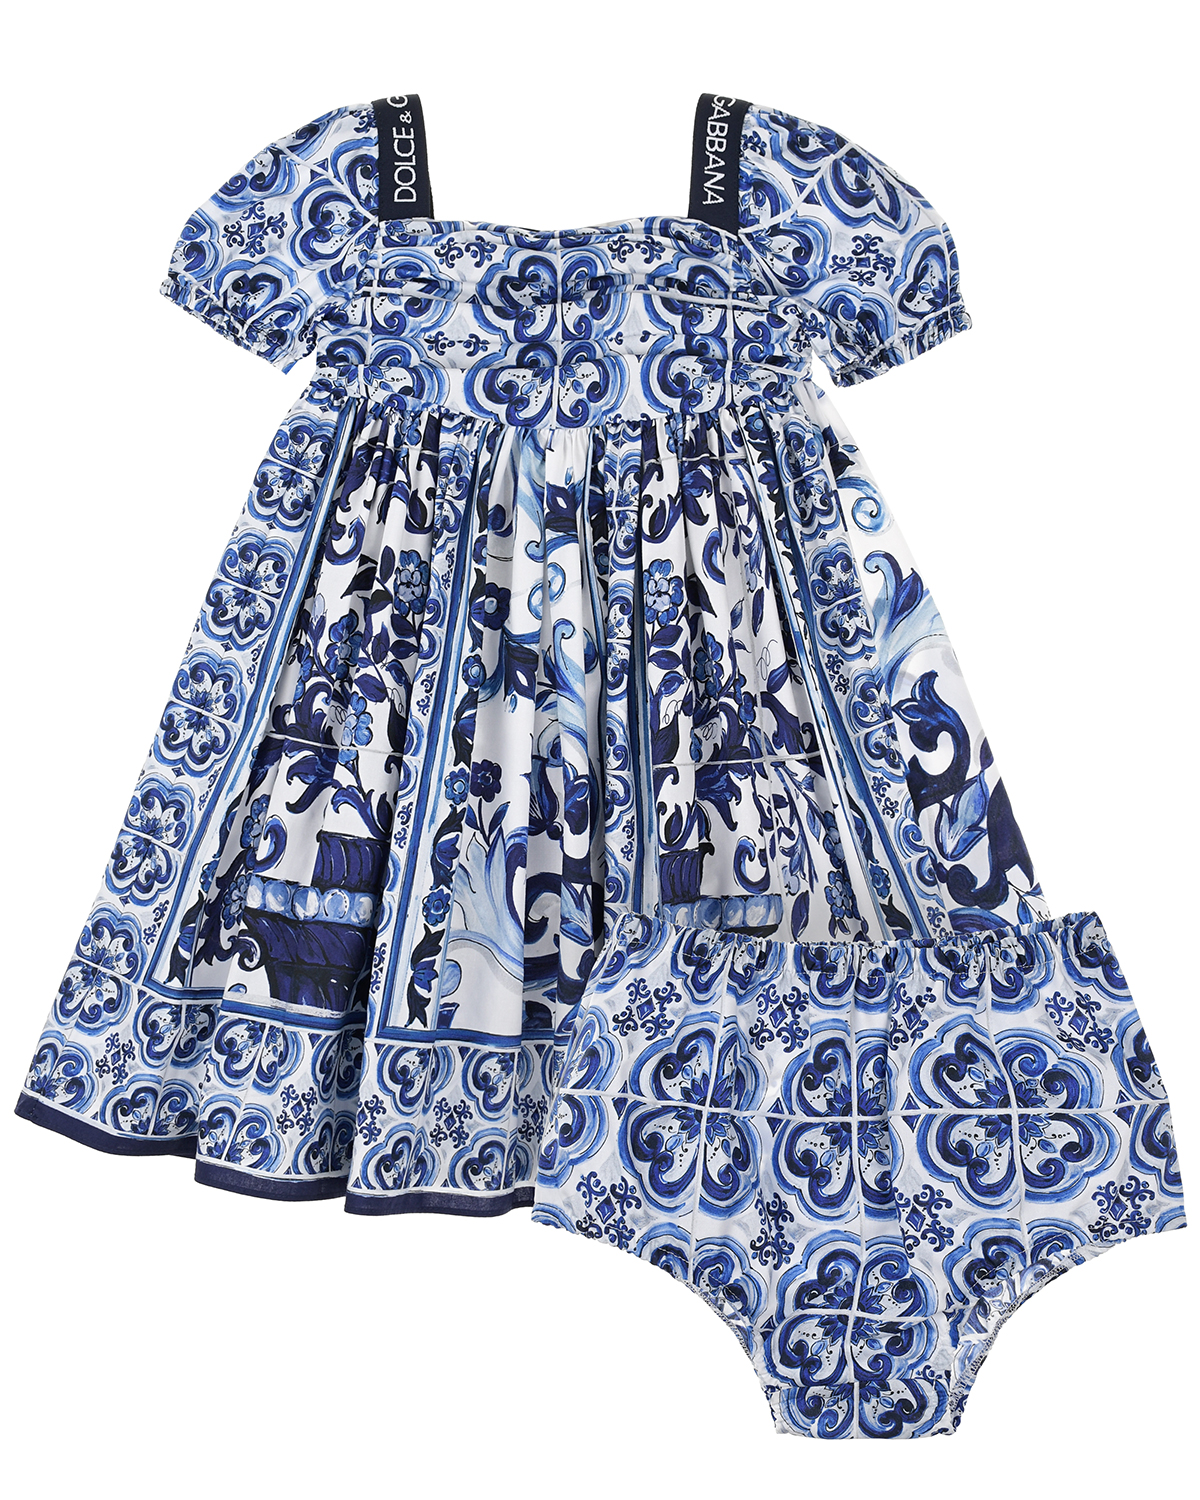 Сине-белое платье с принтом "майолика" Dolce&Gabbana детское